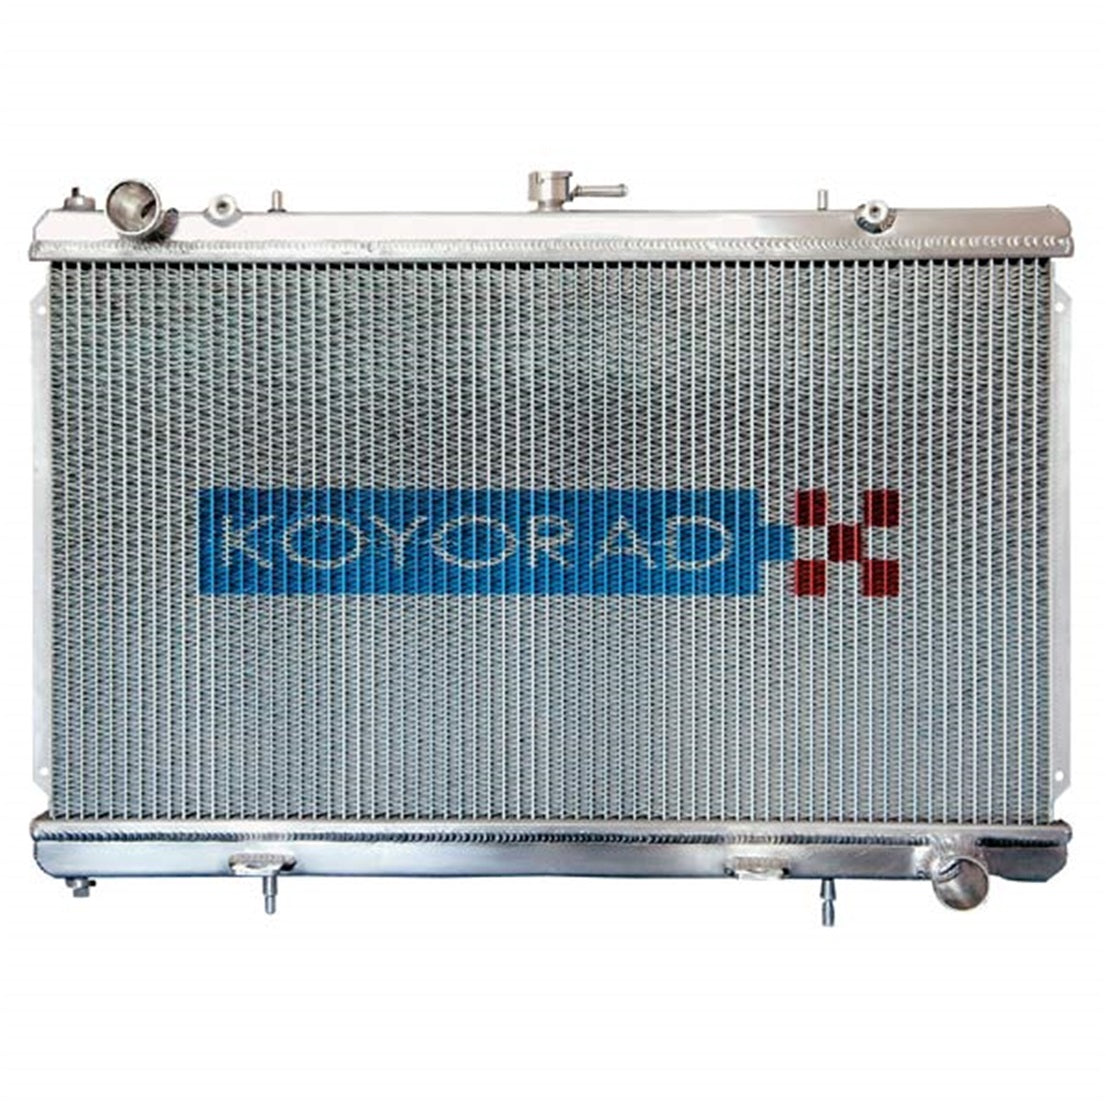 Koyorad Aluminum Radiator (36mm Core) - Honda Accord 94-97 (H22A)